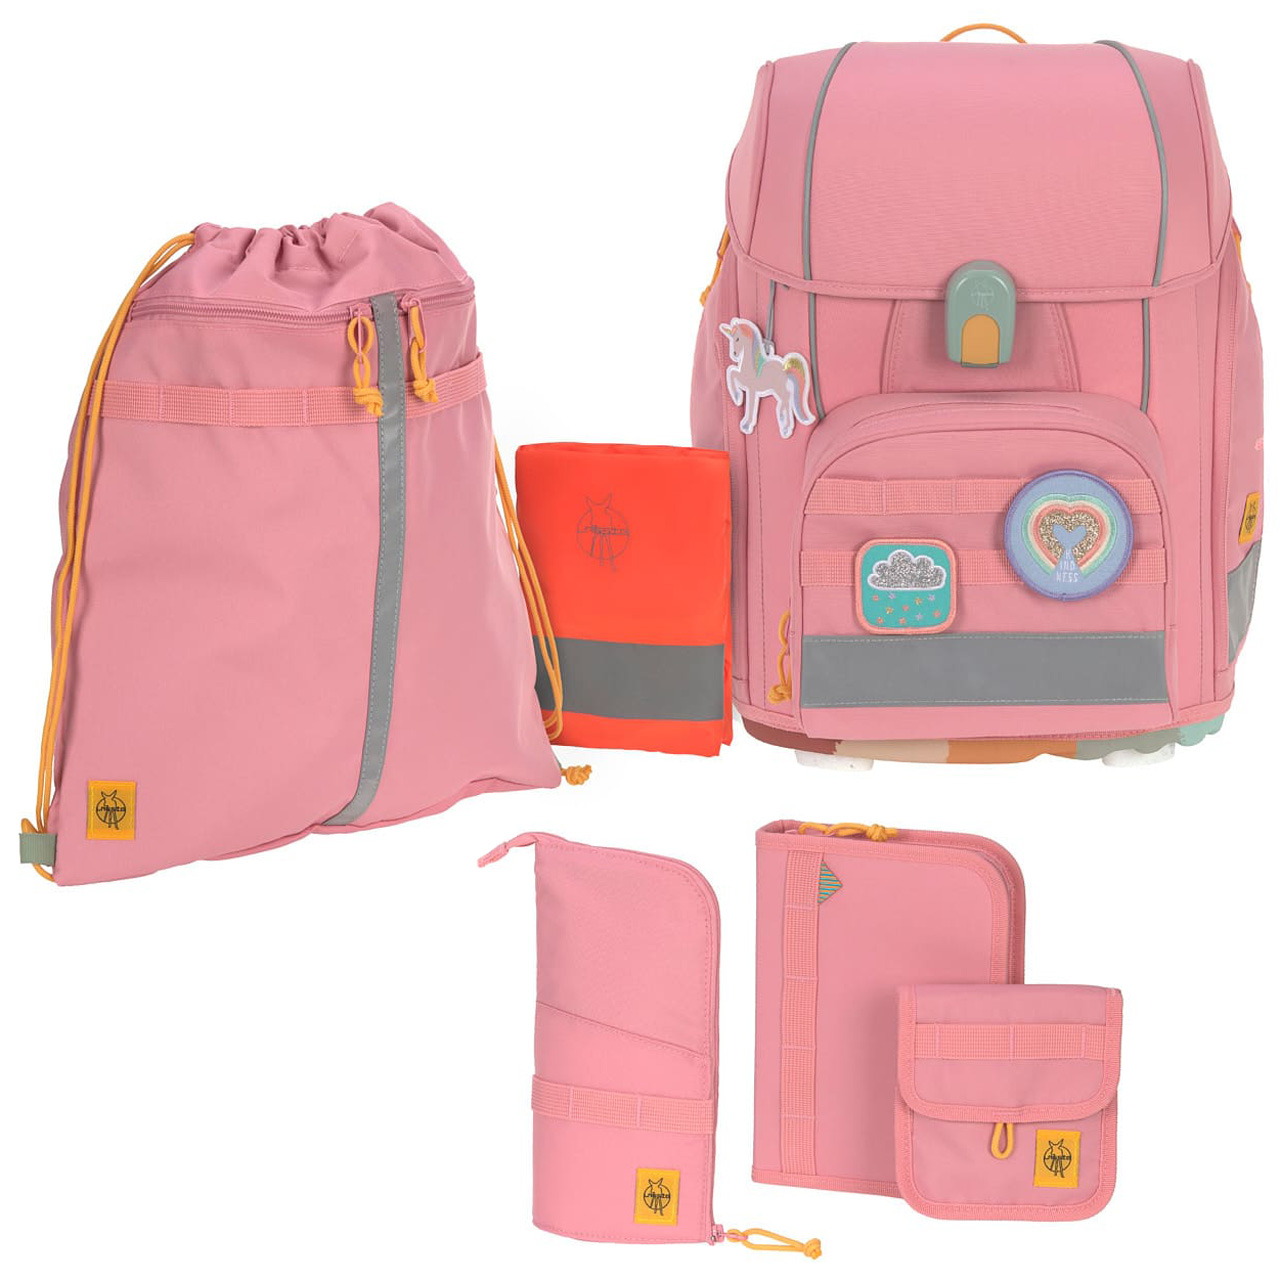 Laessig-Schulranzen-Set-Boxy-Unique-pink-7-teilig-online-kaufen-1205015634-lafueliki